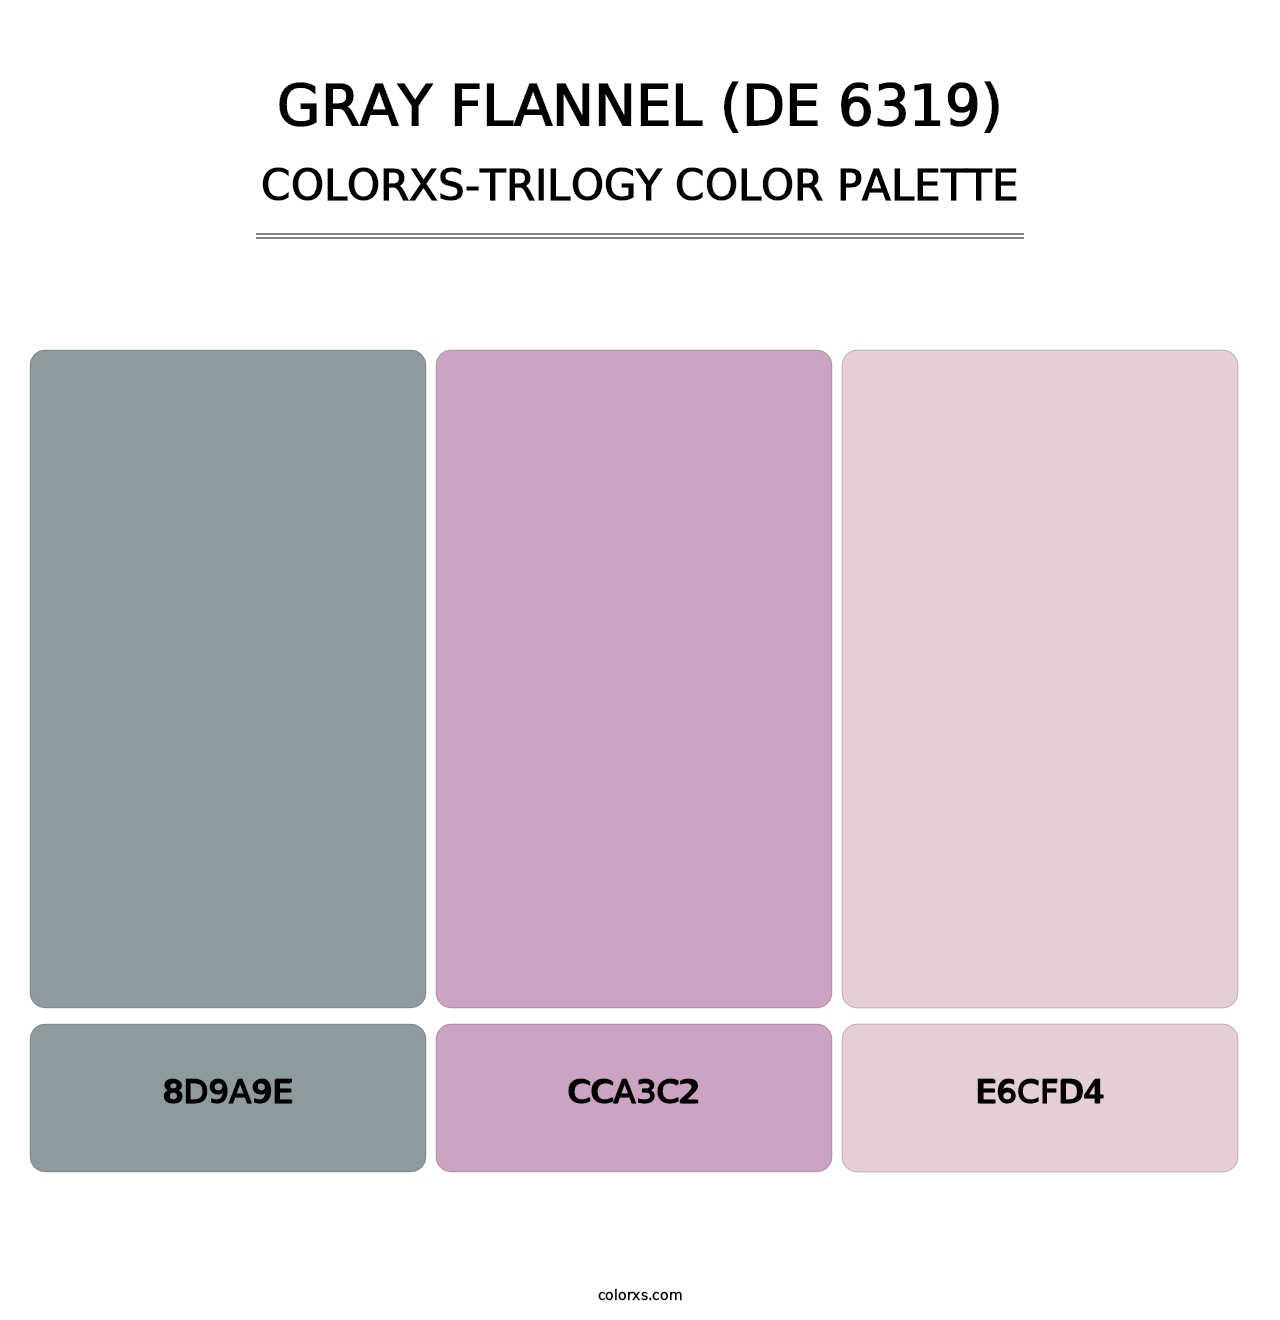 Gray Flannel (DE 6319) - Colorxs Trilogy Palette